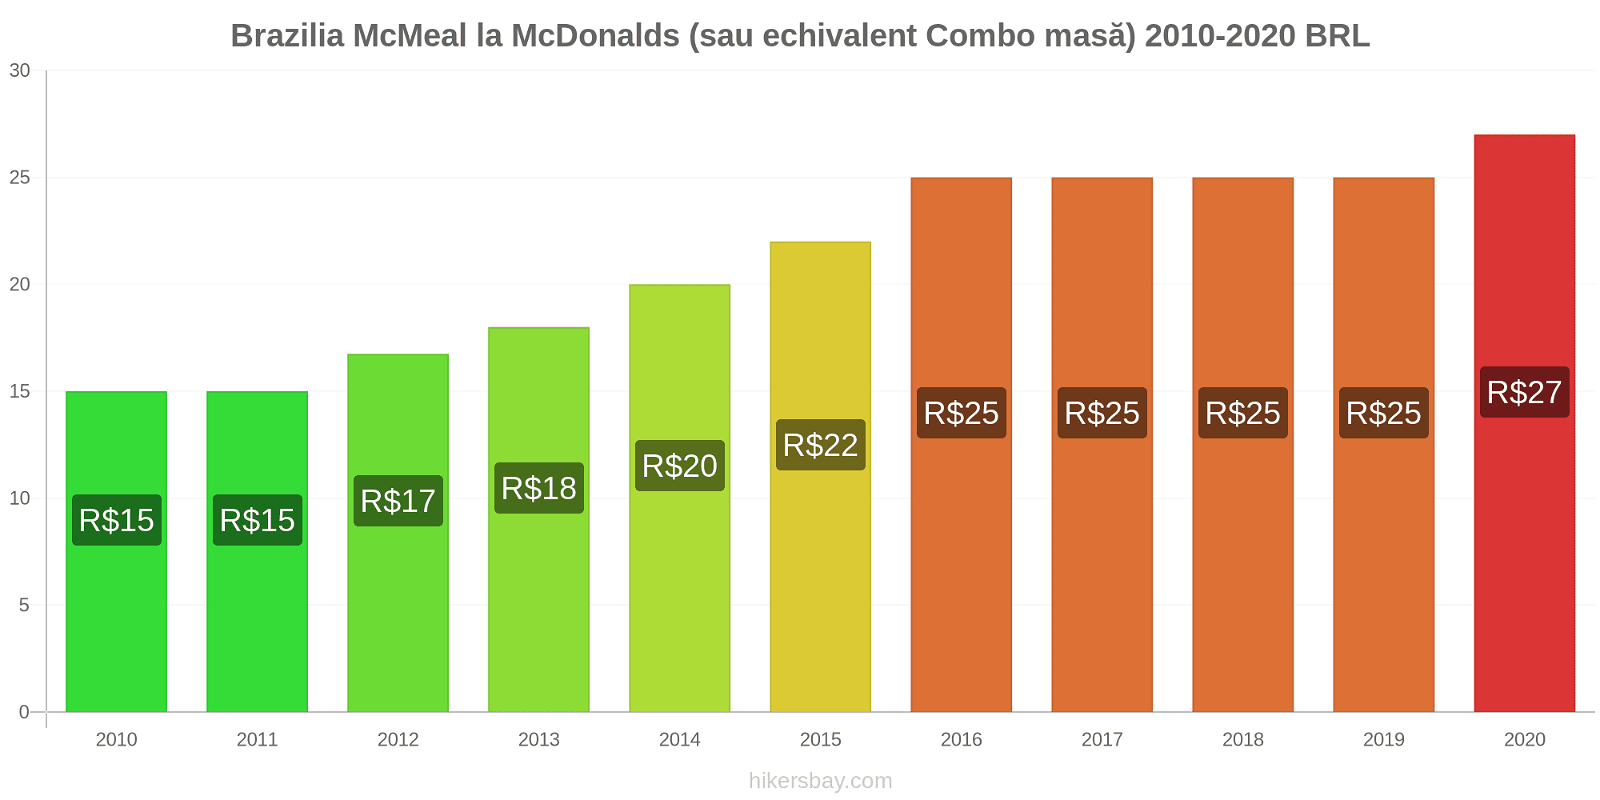 Brazilia modificări de preț McMeal la McDonalds (sau echivalent Combo masă) hikersbay.com